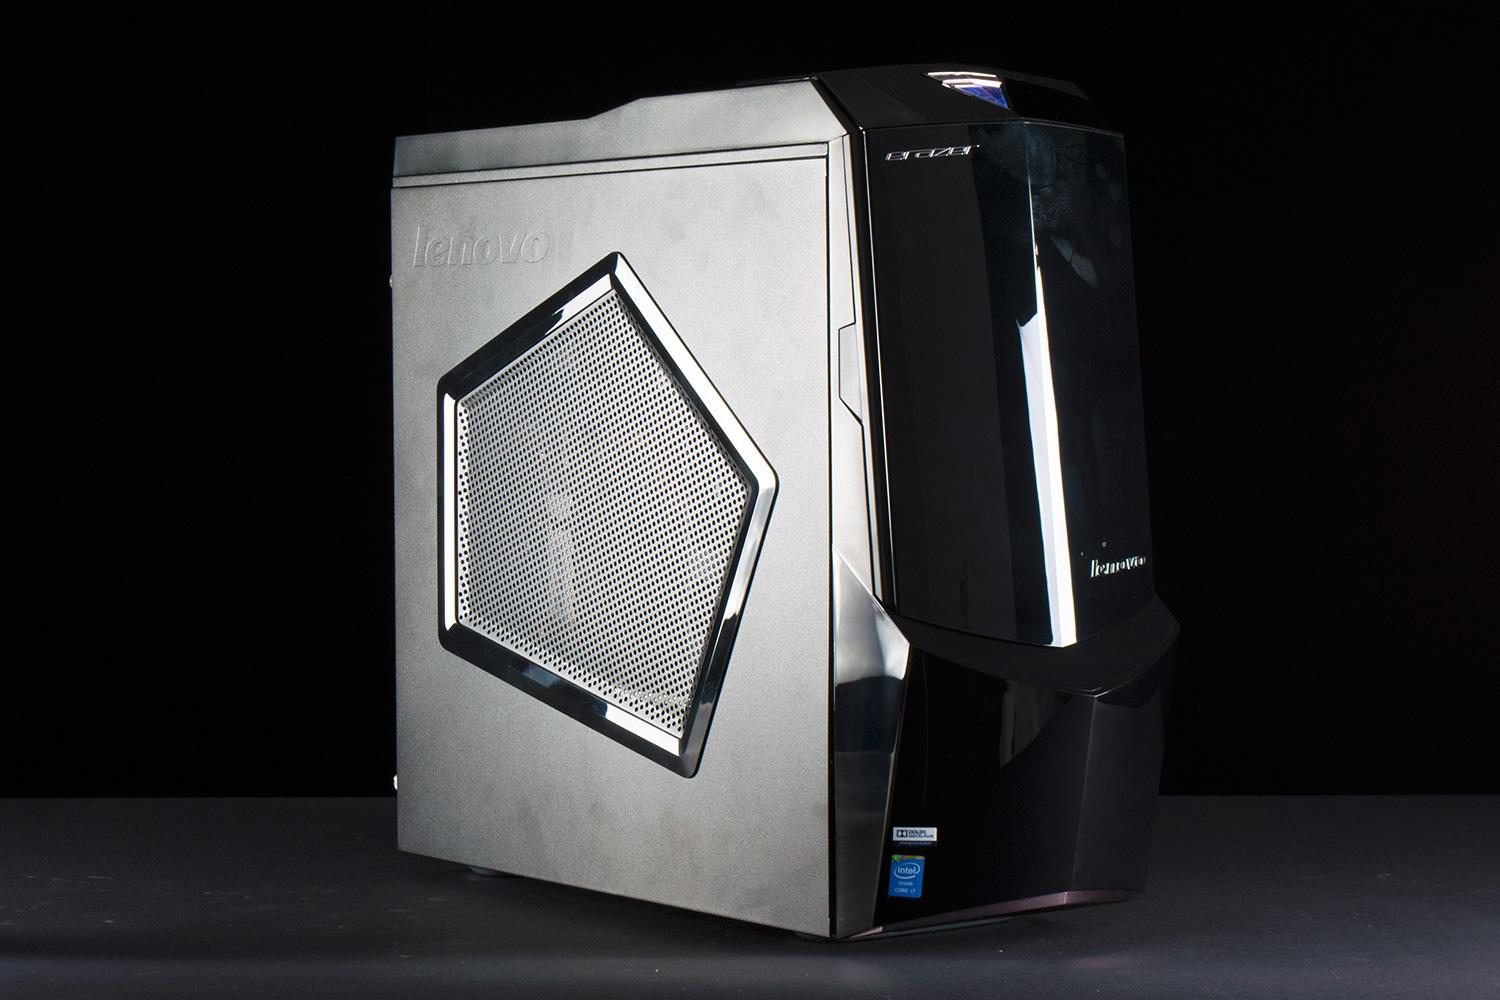 ET deals: $550 off Lenovo Erazer X700 liquid-cooled gaming PC